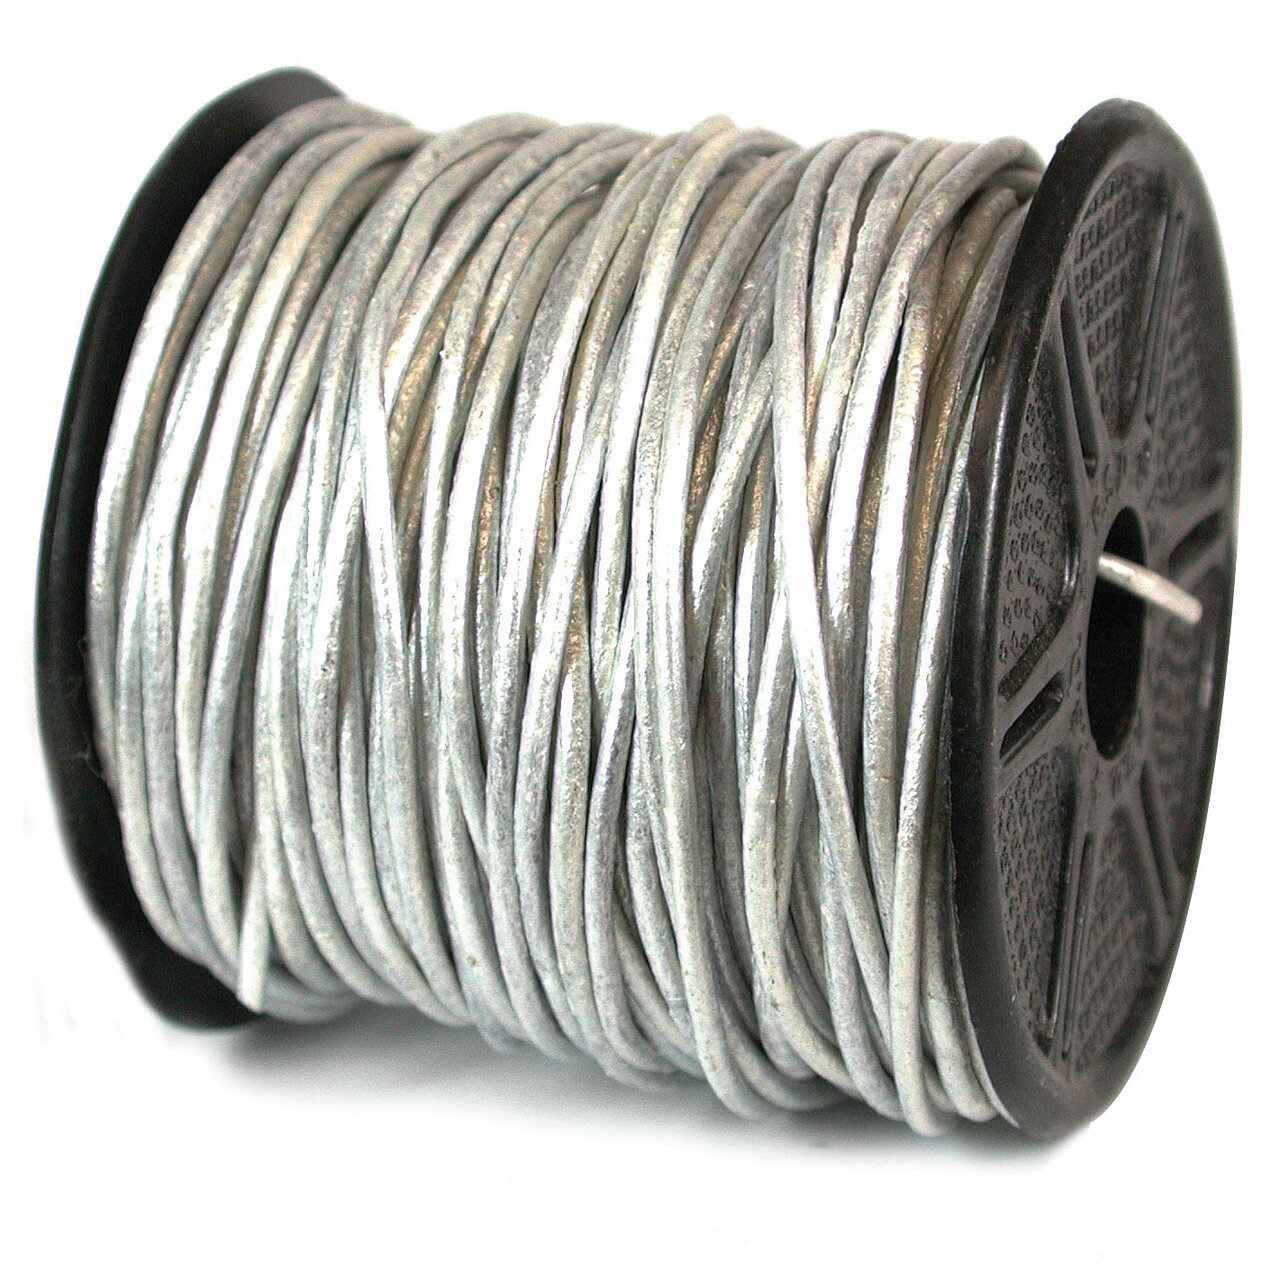 1300 2 mm. 25 Yard Metallic Silver Leather Cord CRD845/2.0-25